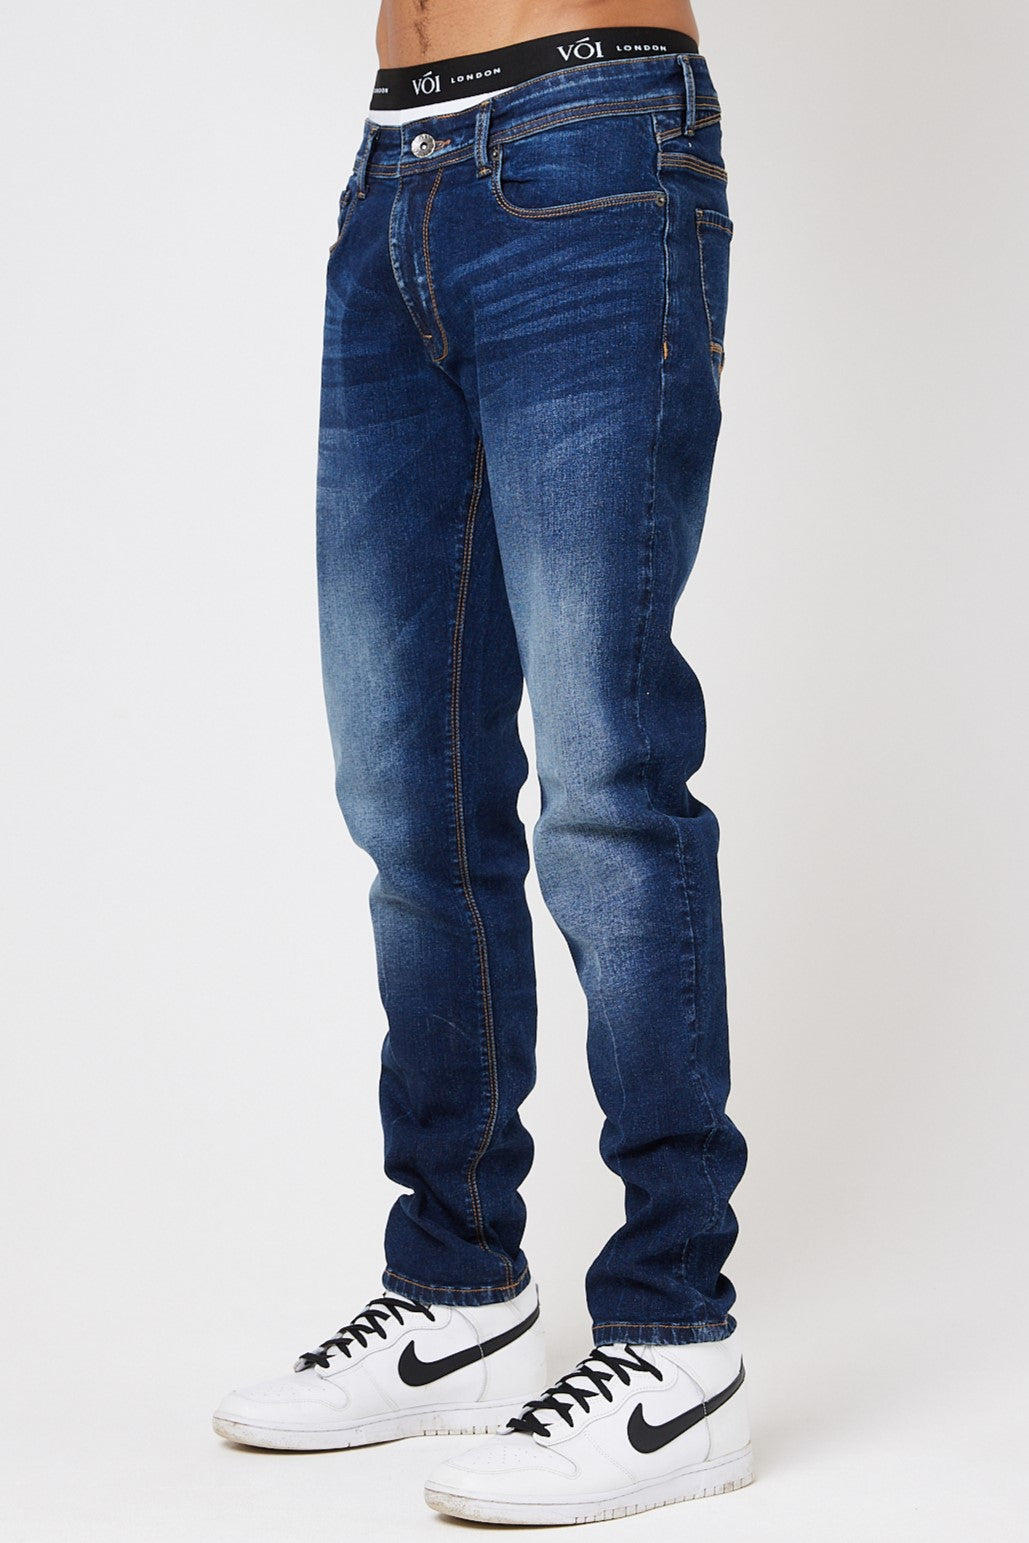 Richmond Tapered Jeans - Dark Blue